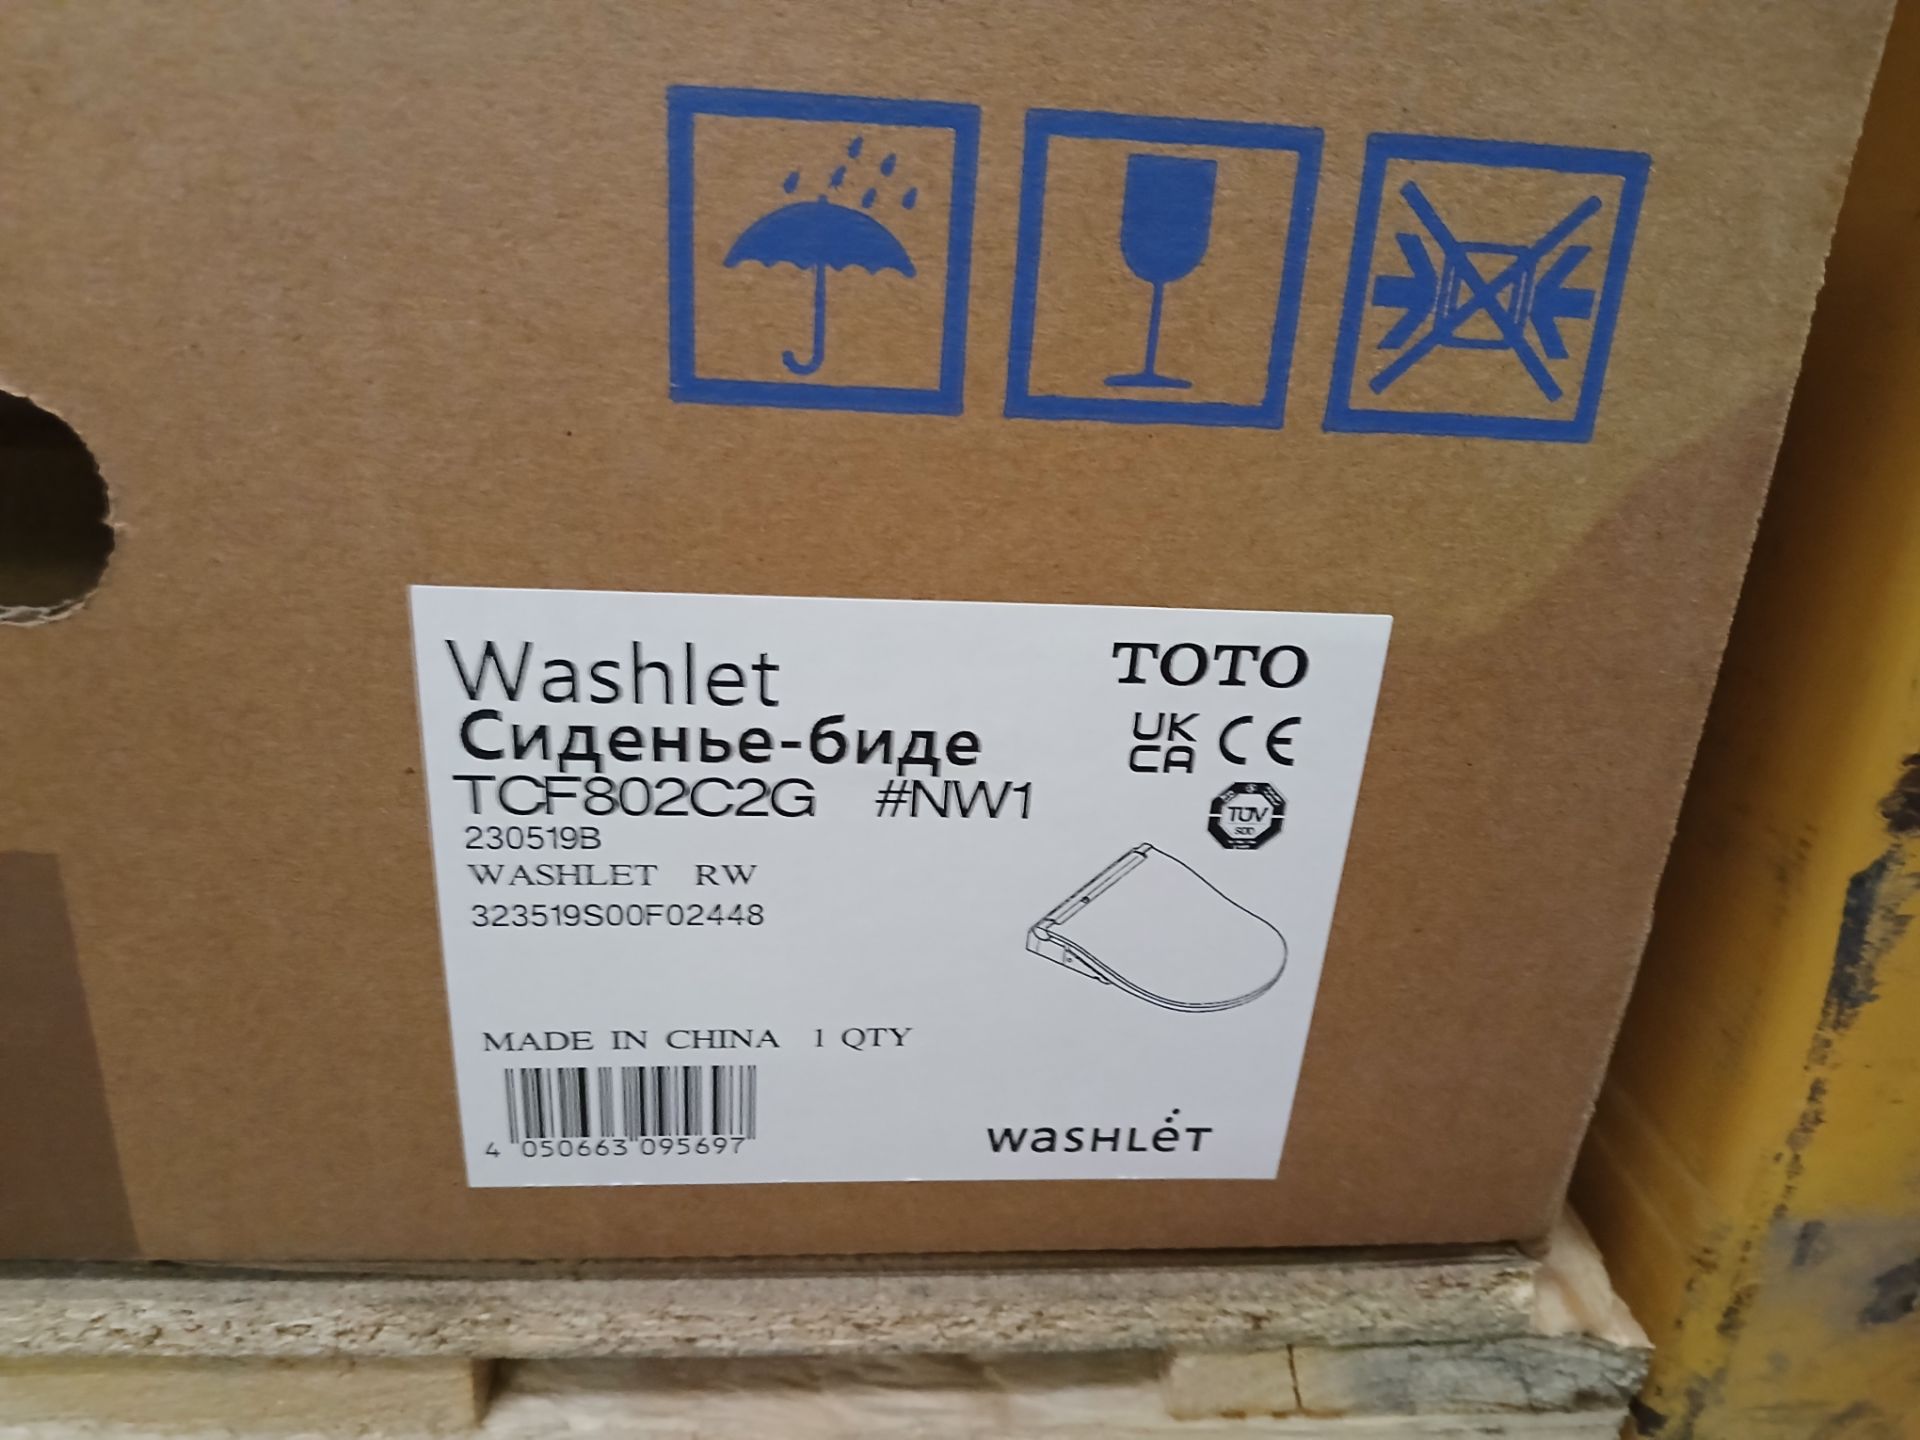 Toto Washlet (TCF802C2G), to box - Image 2 of 2